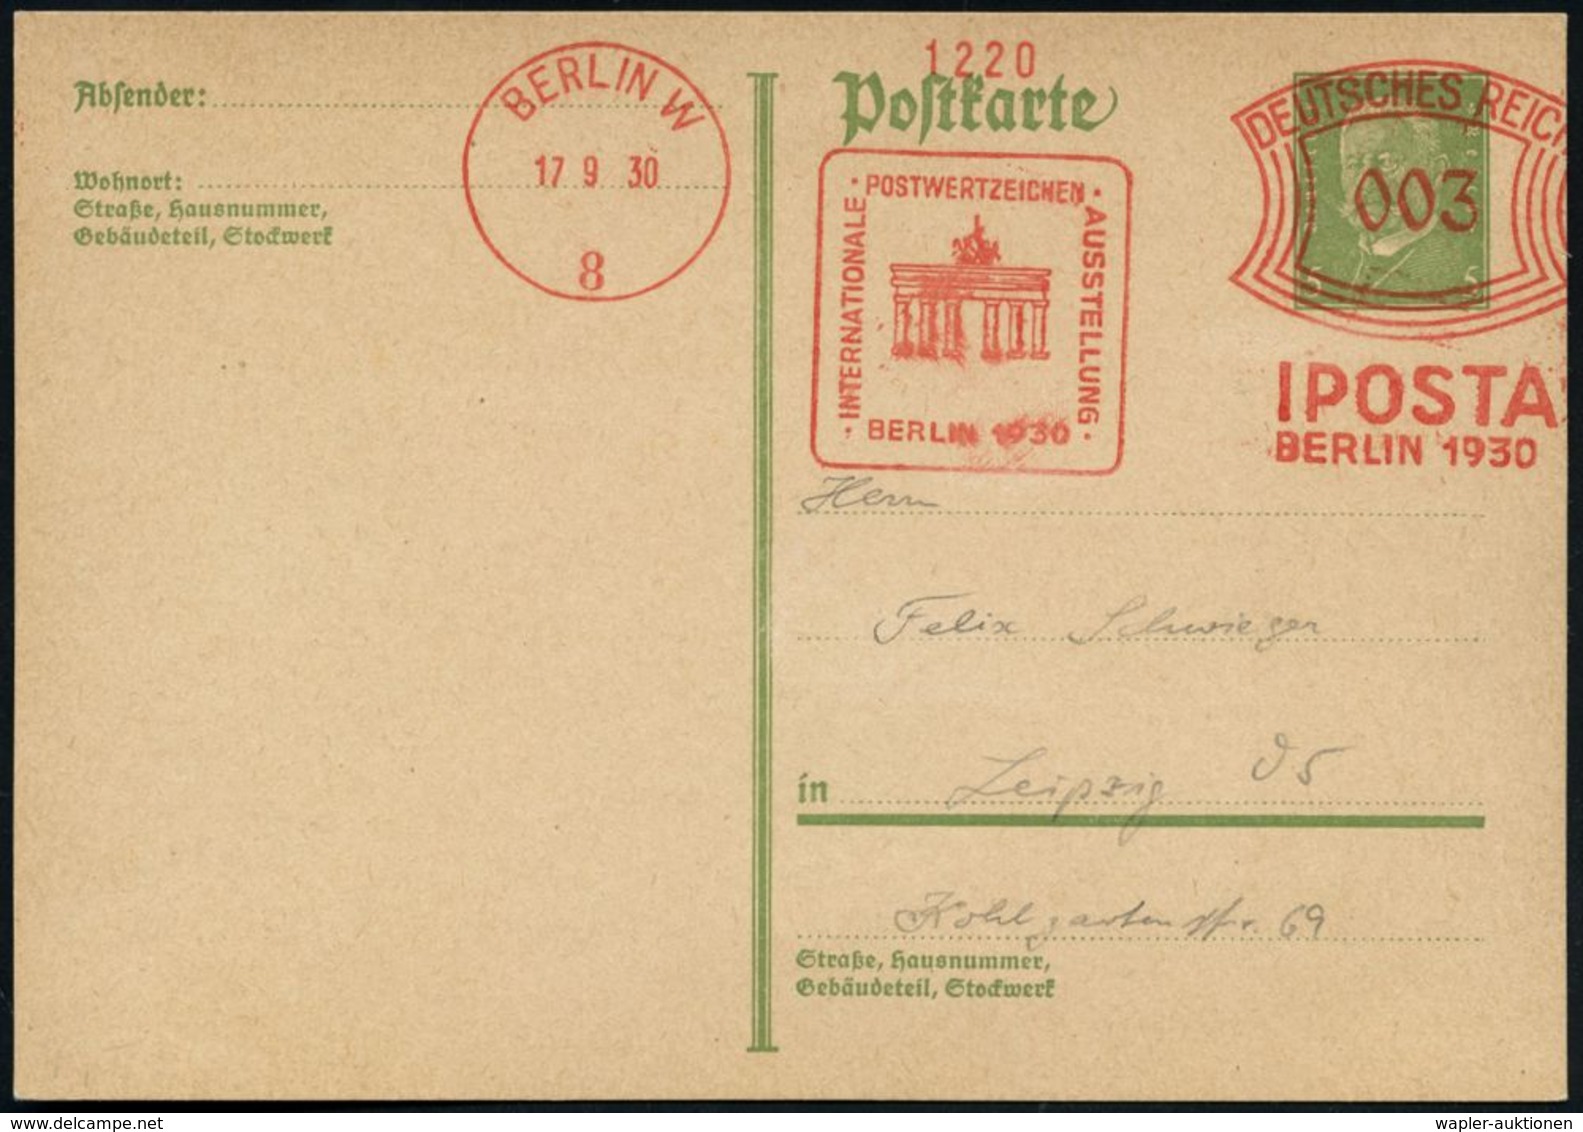 BRANDENBURGER TOR - EIN DEUTSCHES SYMBOL : BERLIN W/ 8/ IPOSTA/ BERLIN.. 1930 (17.9.) AFS 003 Pf. = Brandenbg.Tor Auf In - Monuments